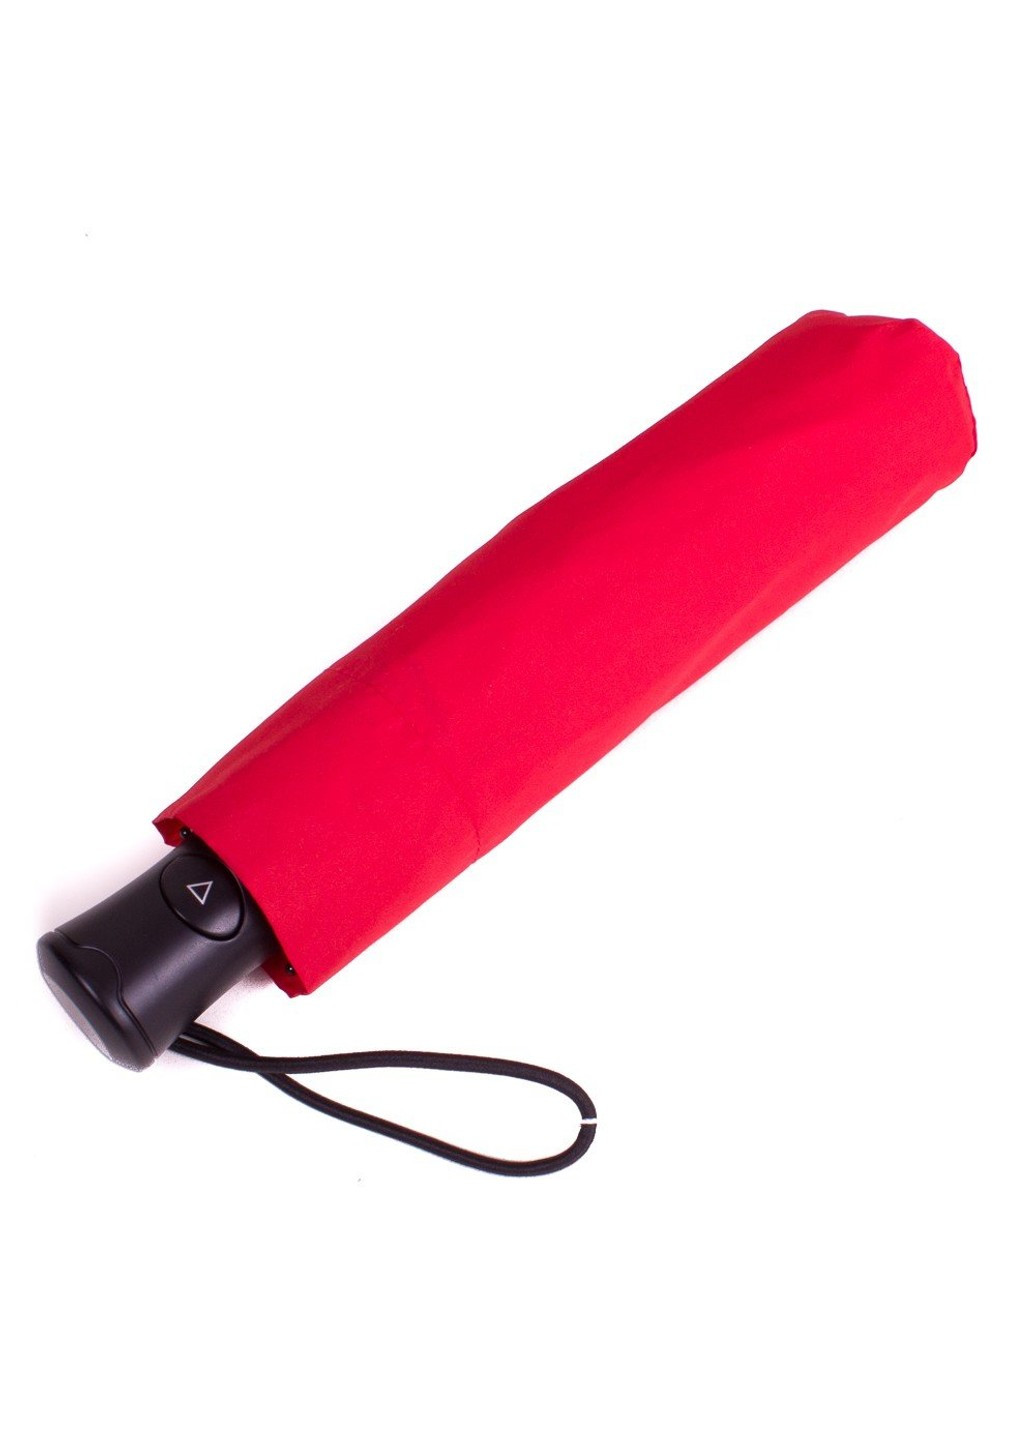 Полуавтоматический женский зонтик красный Happy Rain (262975800)